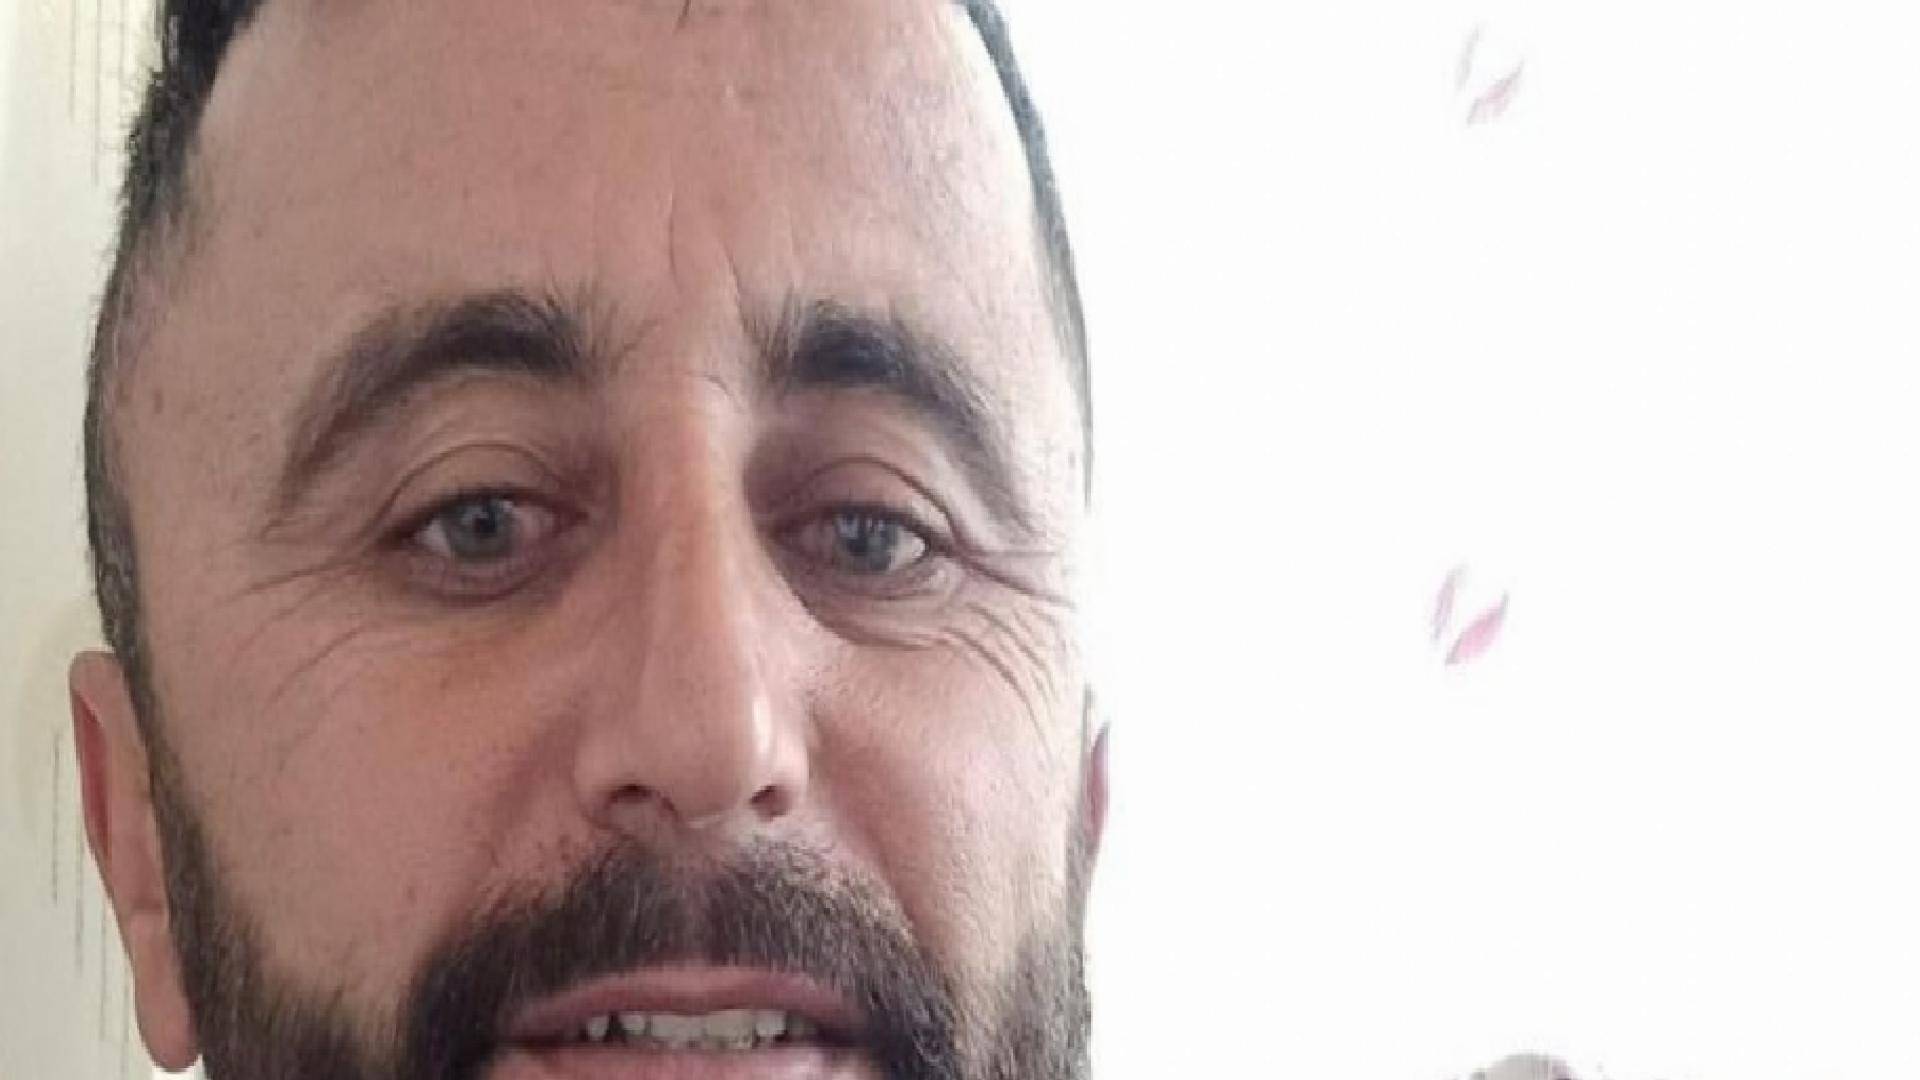 Burdur’da mermer ocağında yüksekten düşen 42 yaşındaki işçi yaşamını kaybetti